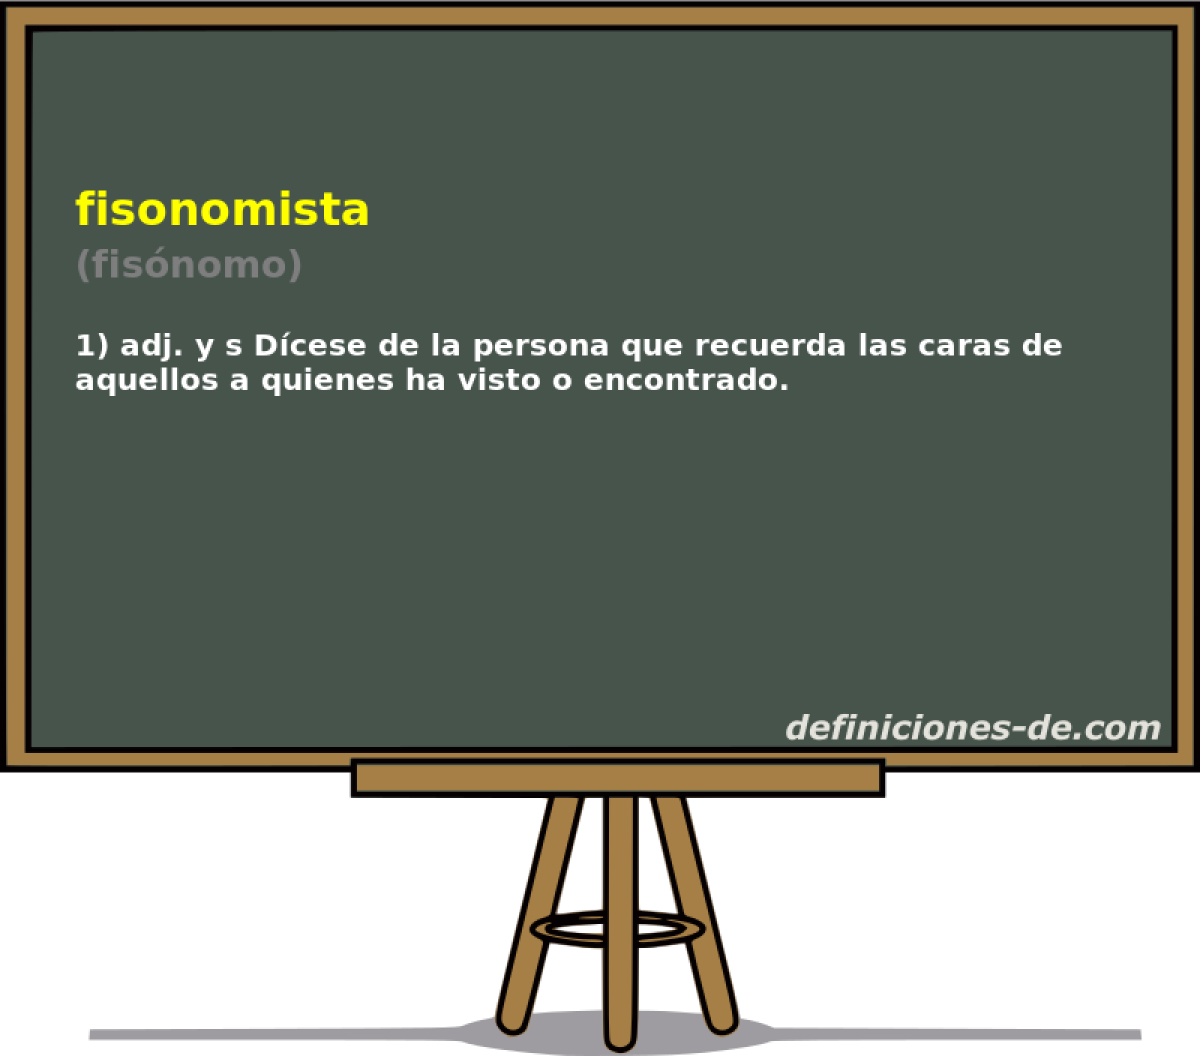 fisonomista (fisnomo)